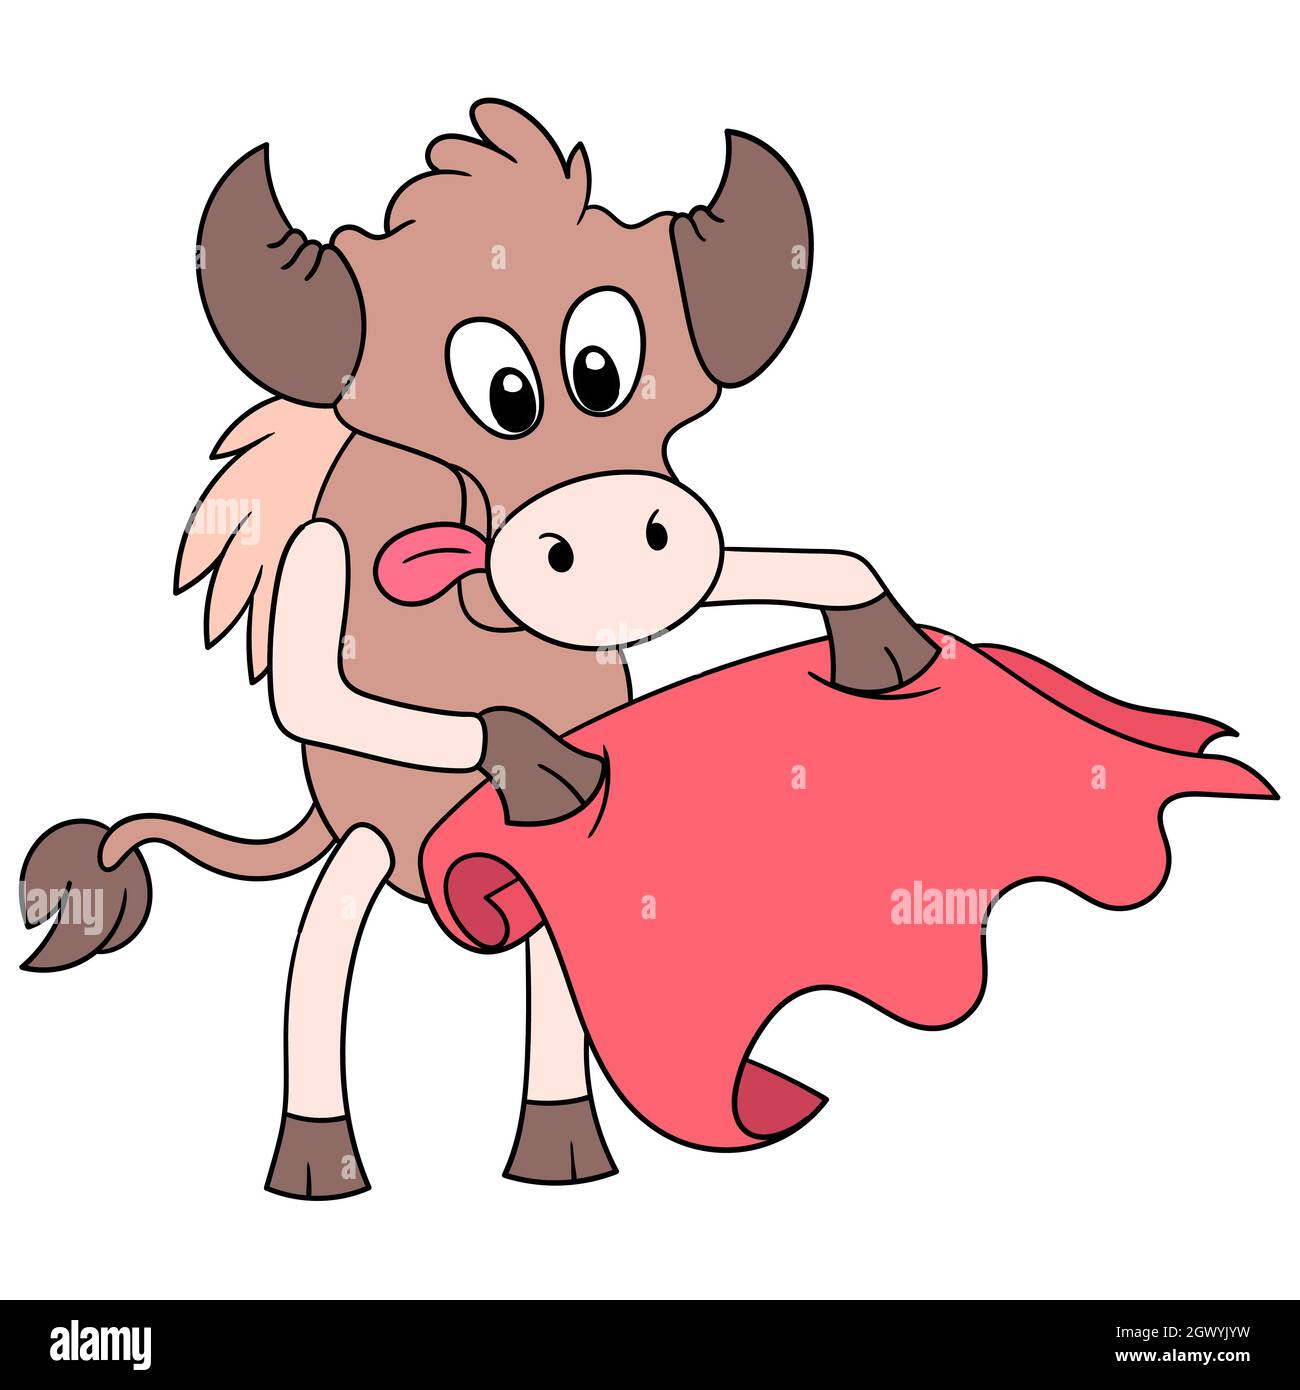 der spanische Stier ist im Matador-Stil und trägt ein rotes Tuch  Stock-Vektorgrafik - Alamy